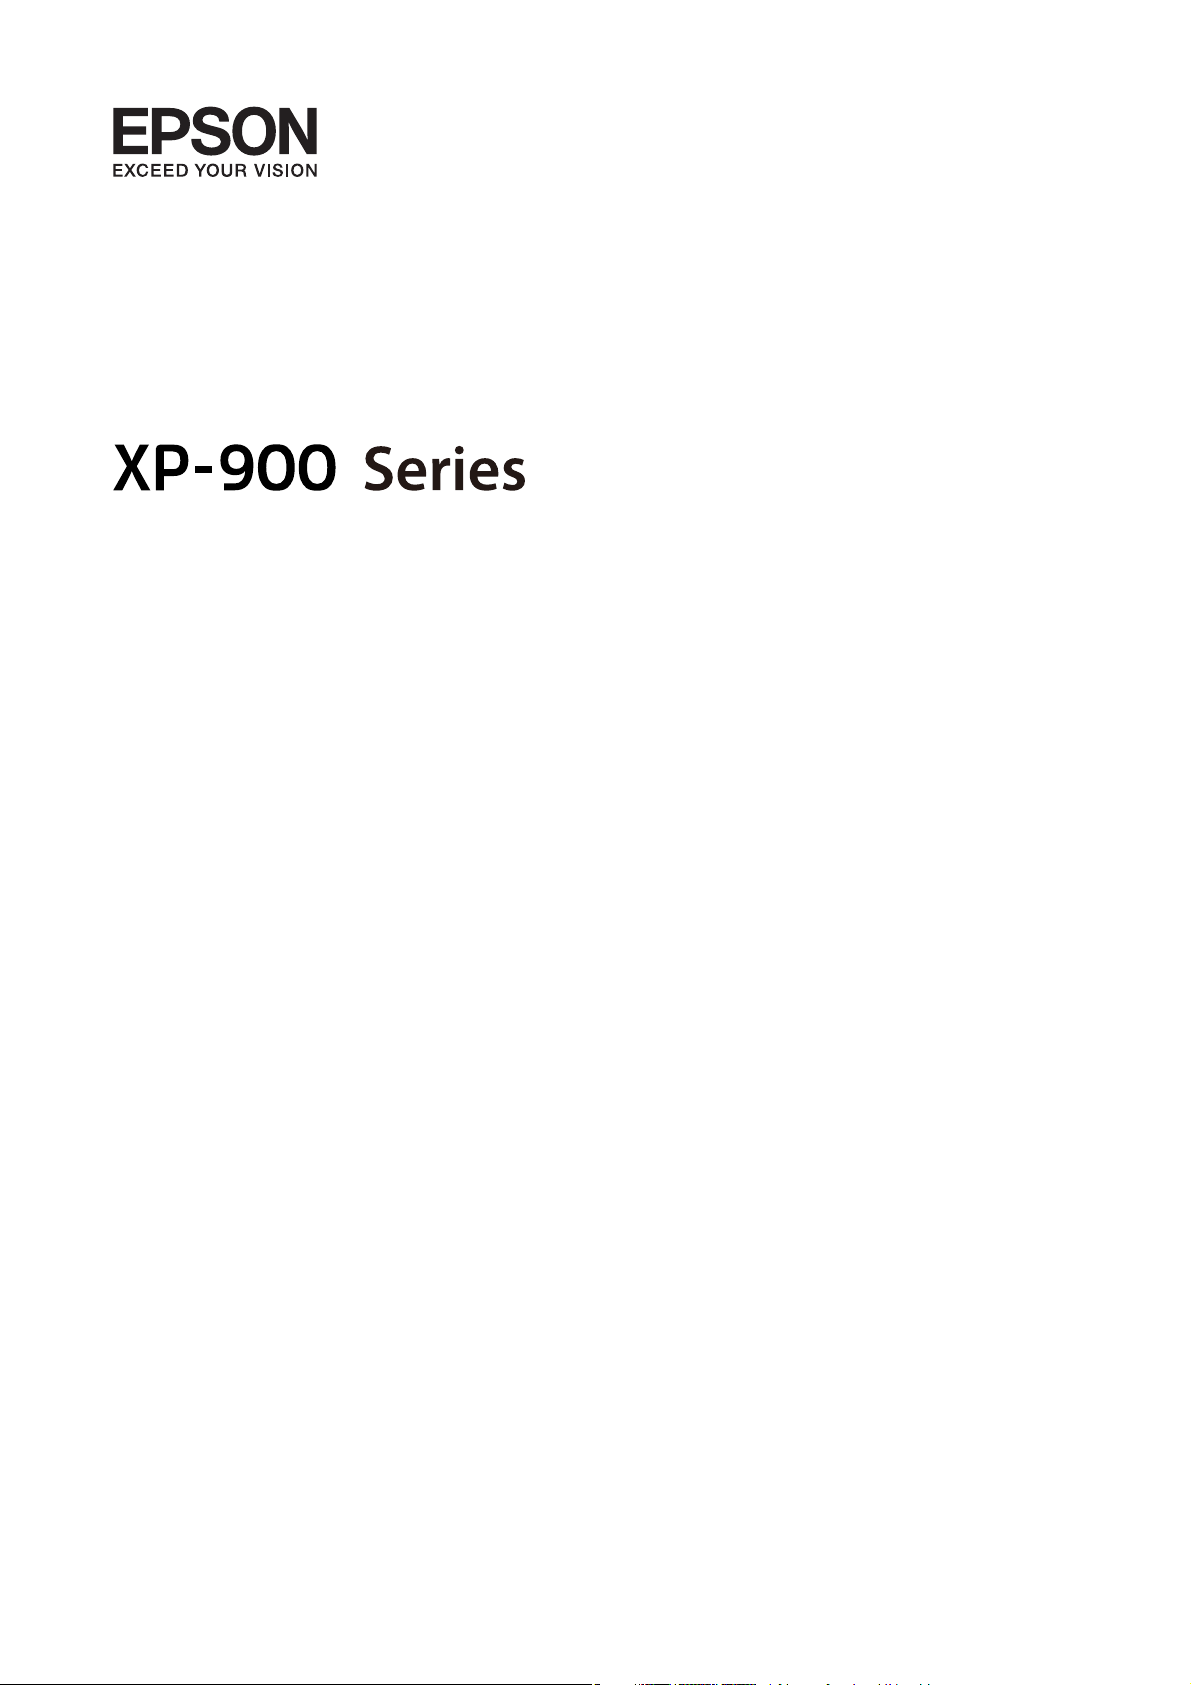 Bedienungsanleitung Epson Expression Premium Xp 900 Seite 1 Von 207 Deutsch 7066